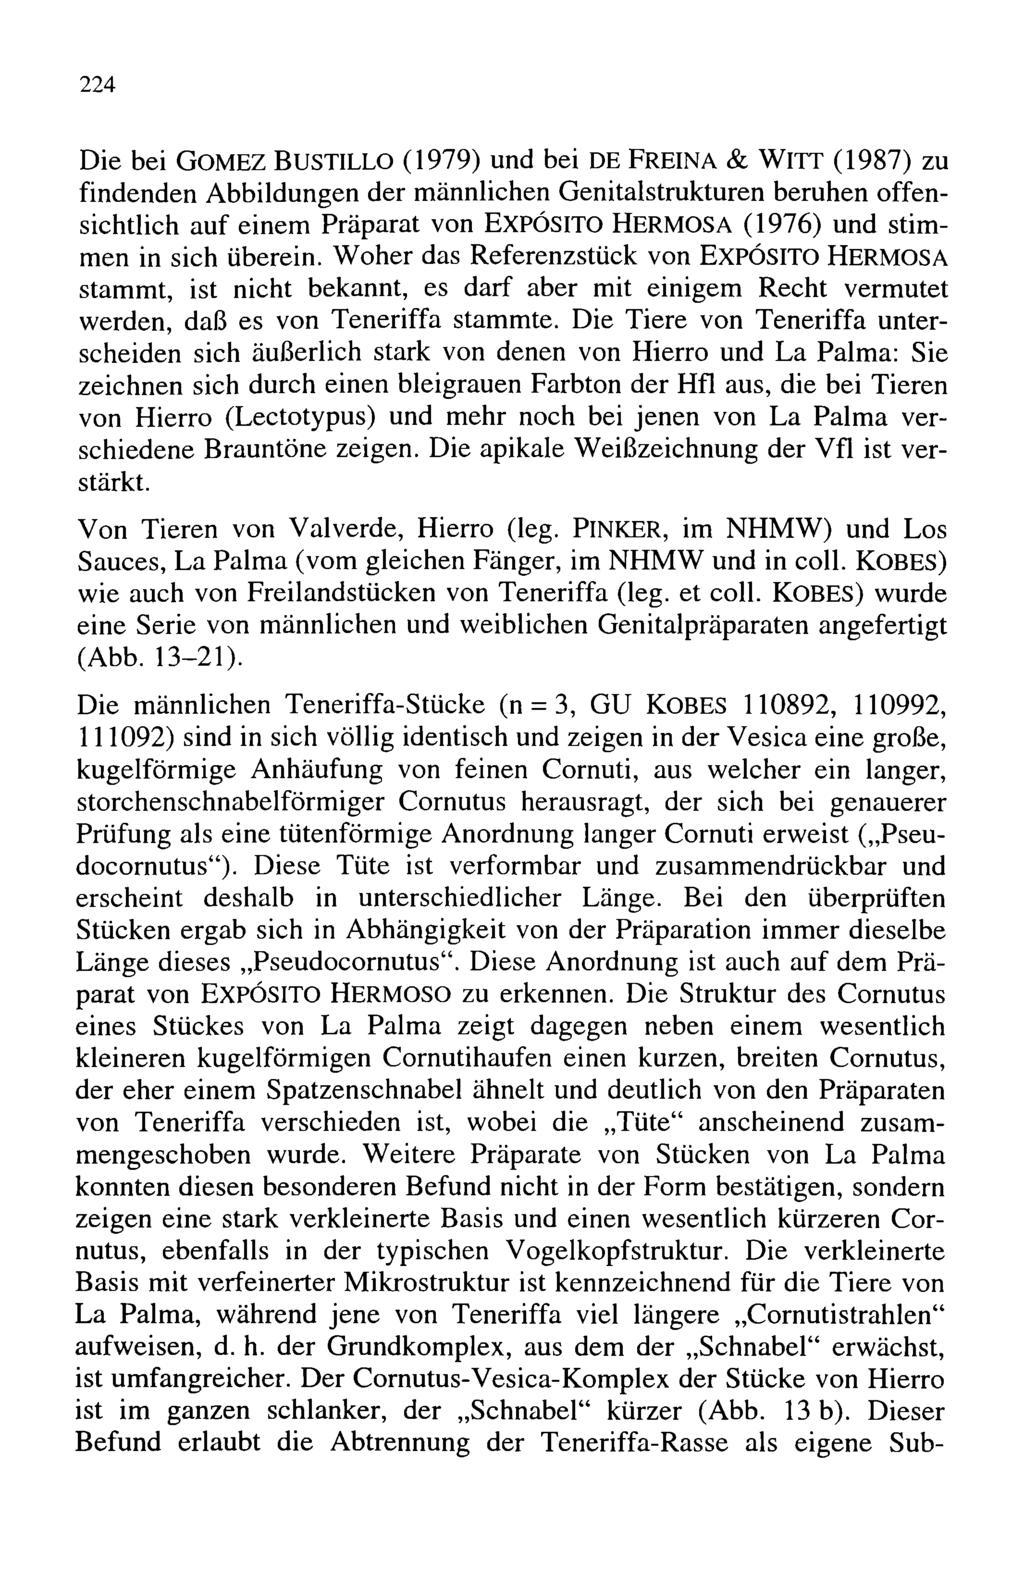 224 Entomologischer Verein Apollo e.v. Frankfurt am Main; download unter www.zobodat.